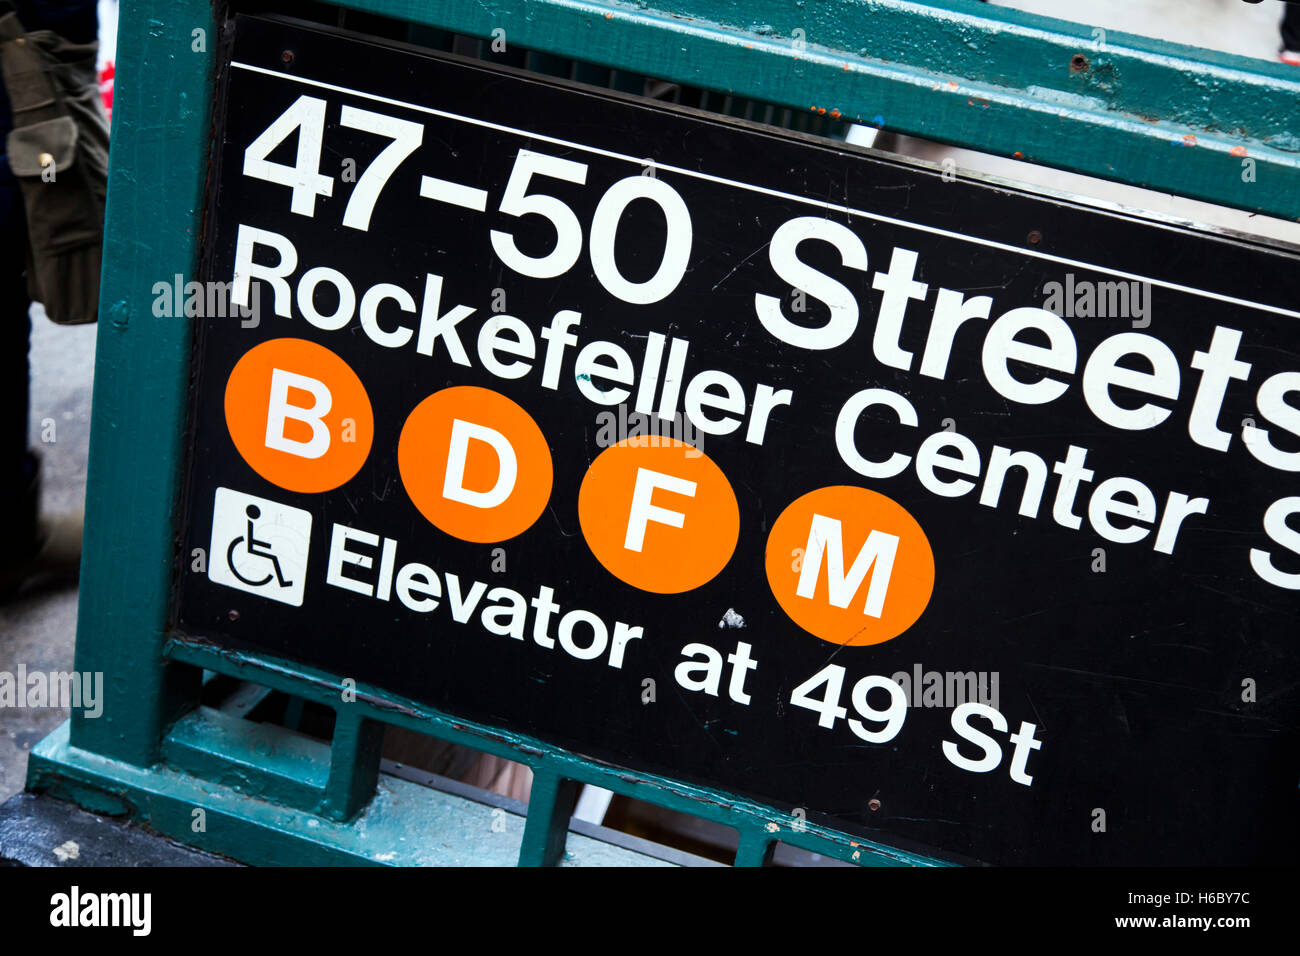 Letrero con su entrada a la 47-50 st. La estación de metro del centro Rockefeller en Manhattan, Nueva York. Foto de stock